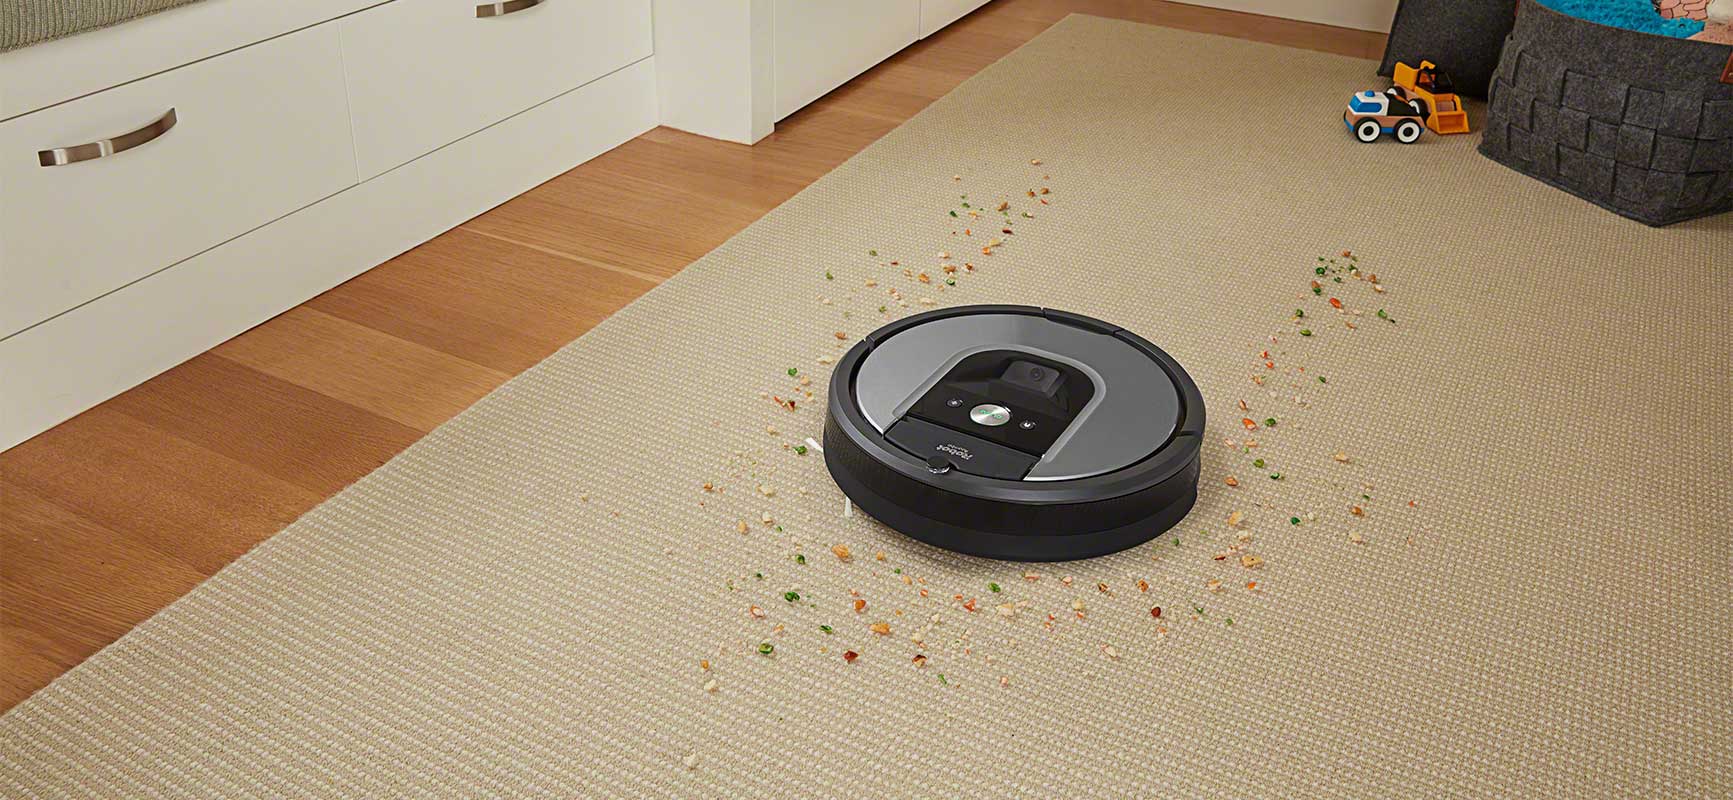 iRobot Roomba serii 900 odkurza wykładzinę z kolorowych płatków